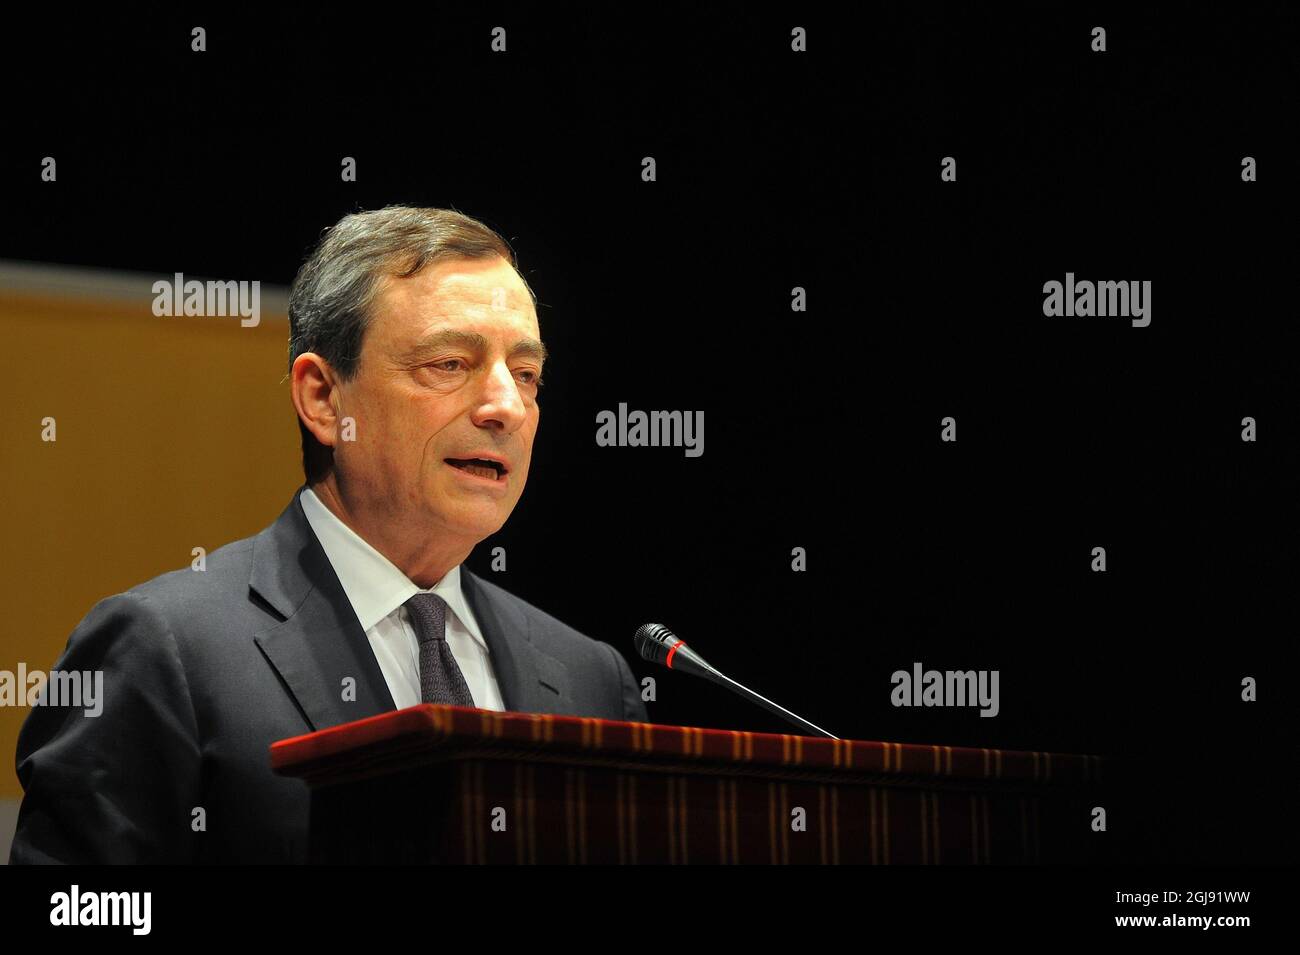 Rom, ITALIEN - 13. April 2011: Der italienische Premierminister Mario Draghi während der Pressekonferenz. Rom, Italien. Stockfoto